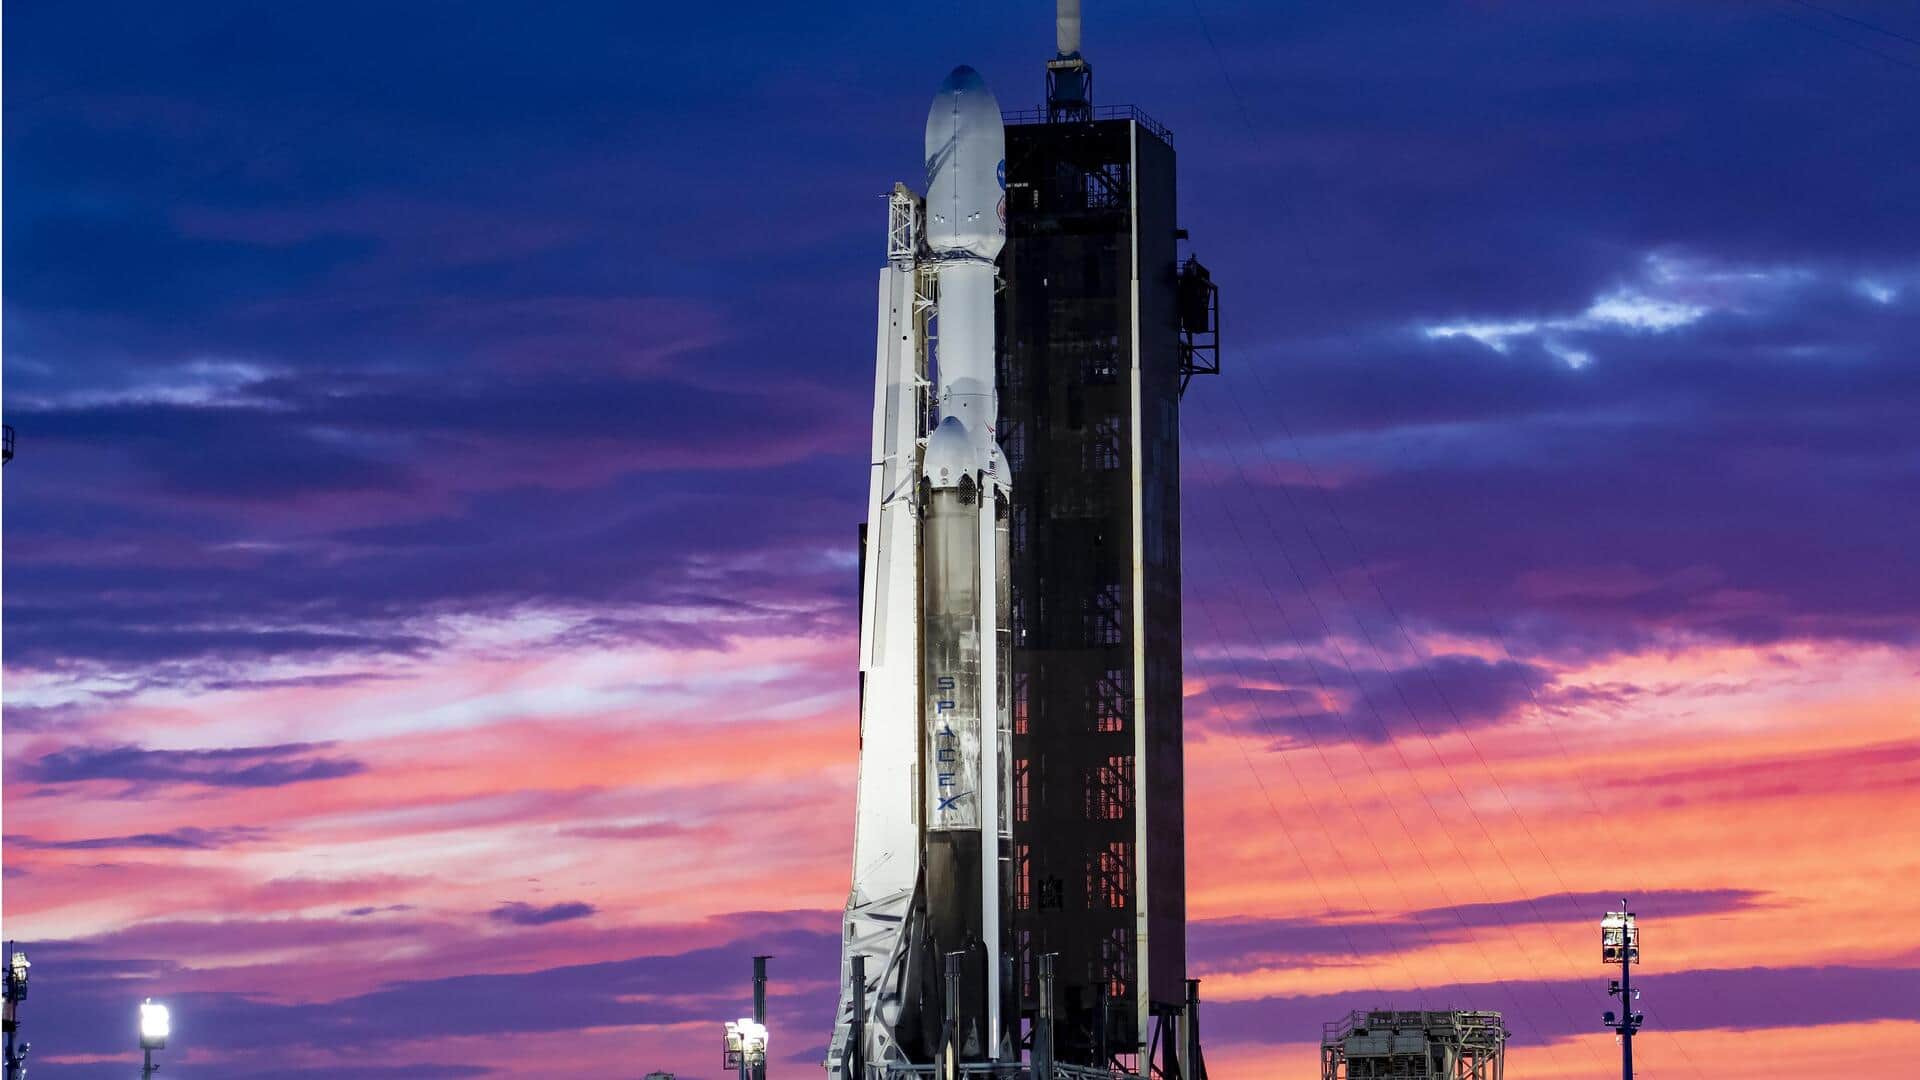 नासा ने लॉन्च किया साइकी एस्ट्रोयड मिशन, जानिए क्या है इसका उद्देश्य